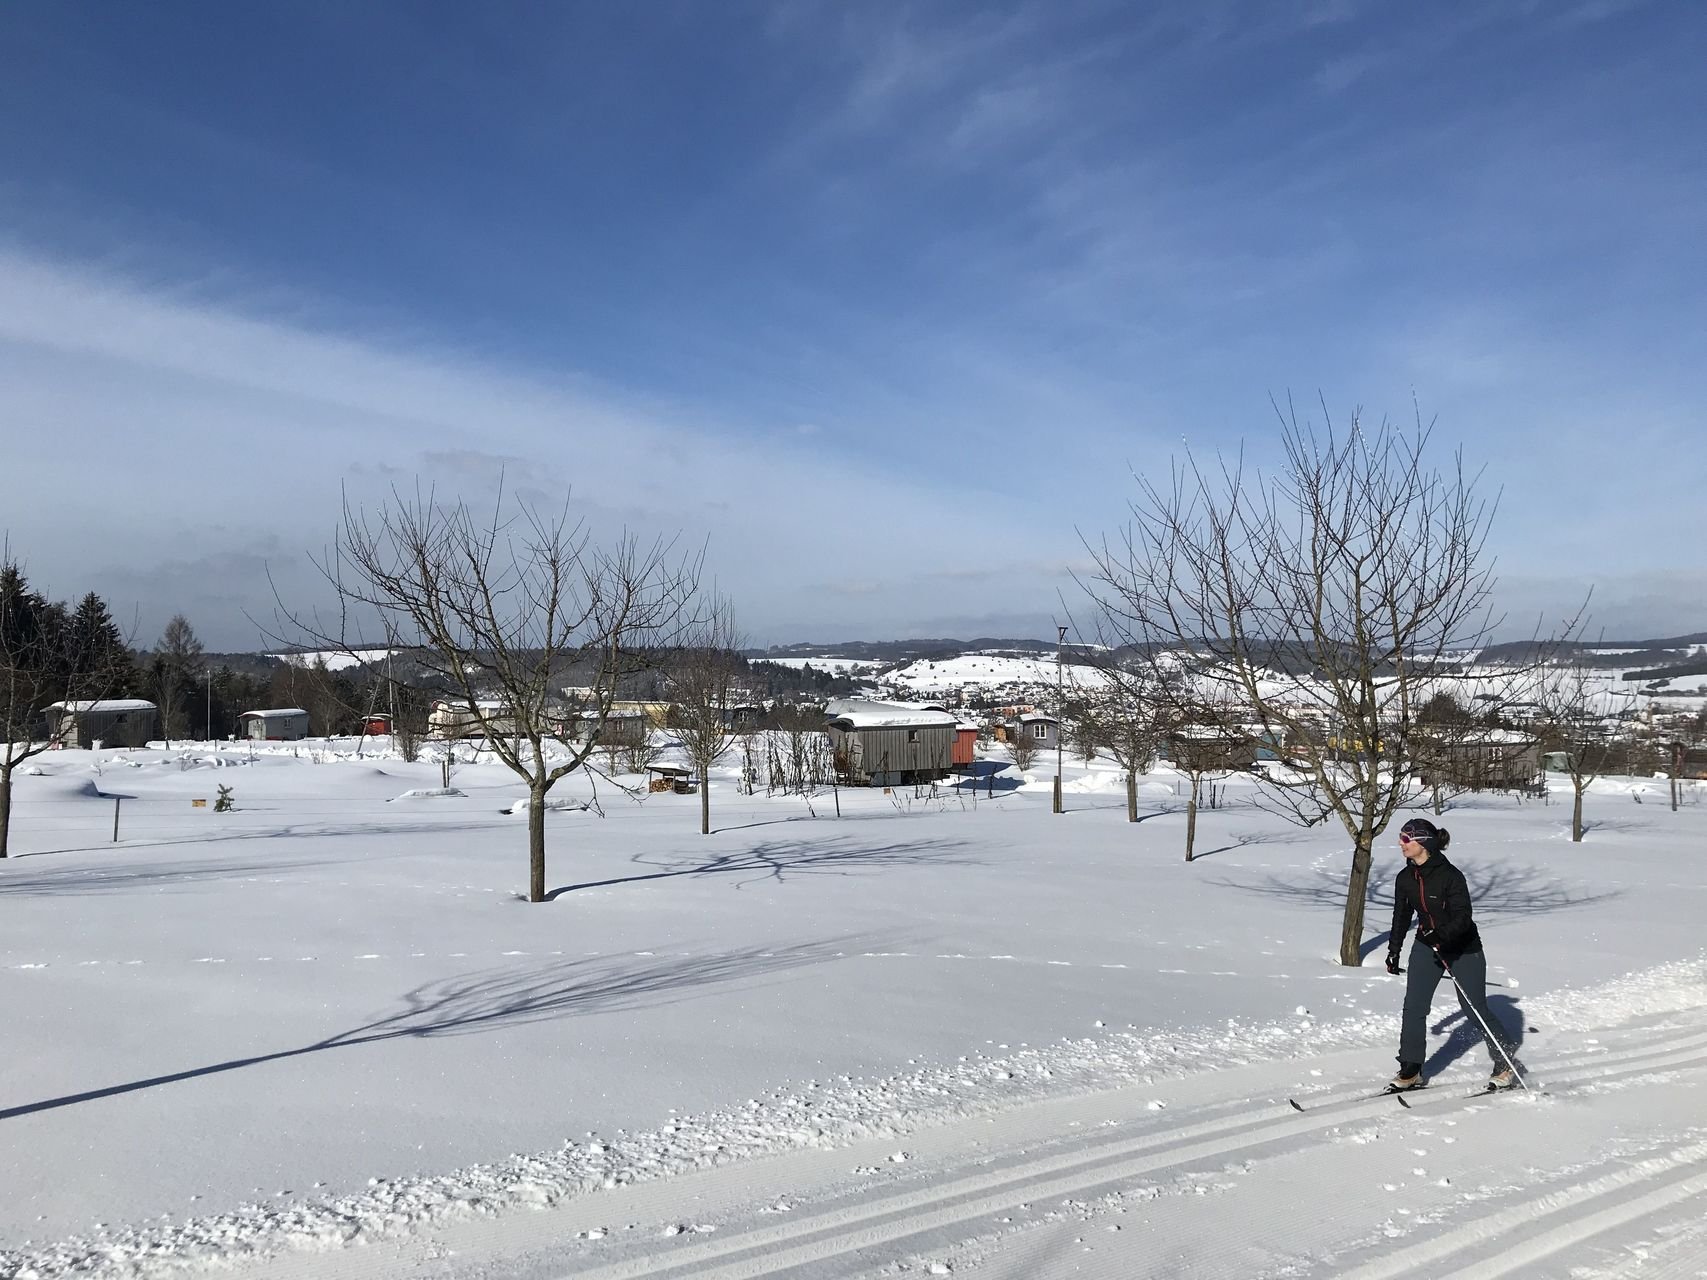 Eine Person läuft mit klassischen Langlaufski in Spurrillen durch eine verschneite Landschaft. Im Hintergrund sind einige Schäferwagen und Bäume. Die Sonne scheint.